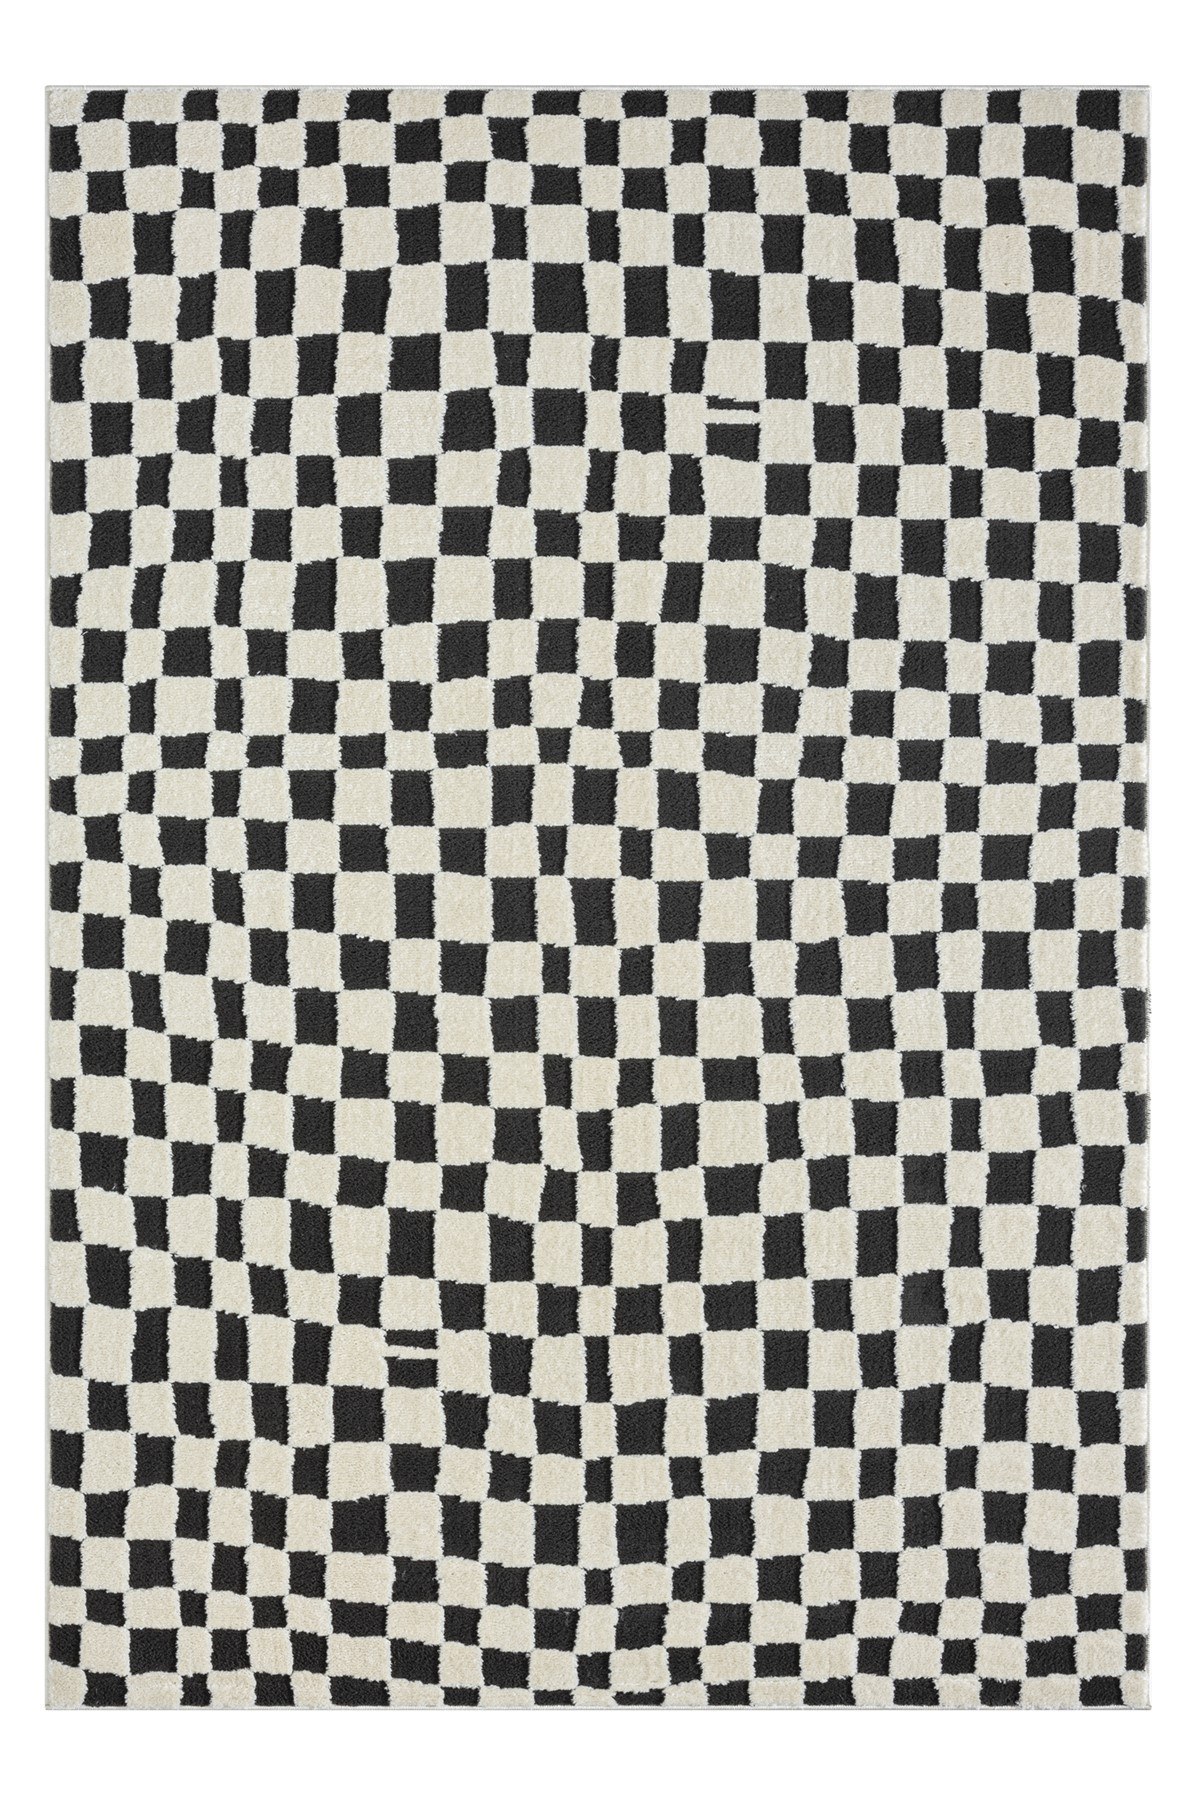 Billede af TEPPI Jung gulvtæppe m. mønster, rektangulær - sort polyester (160x230)